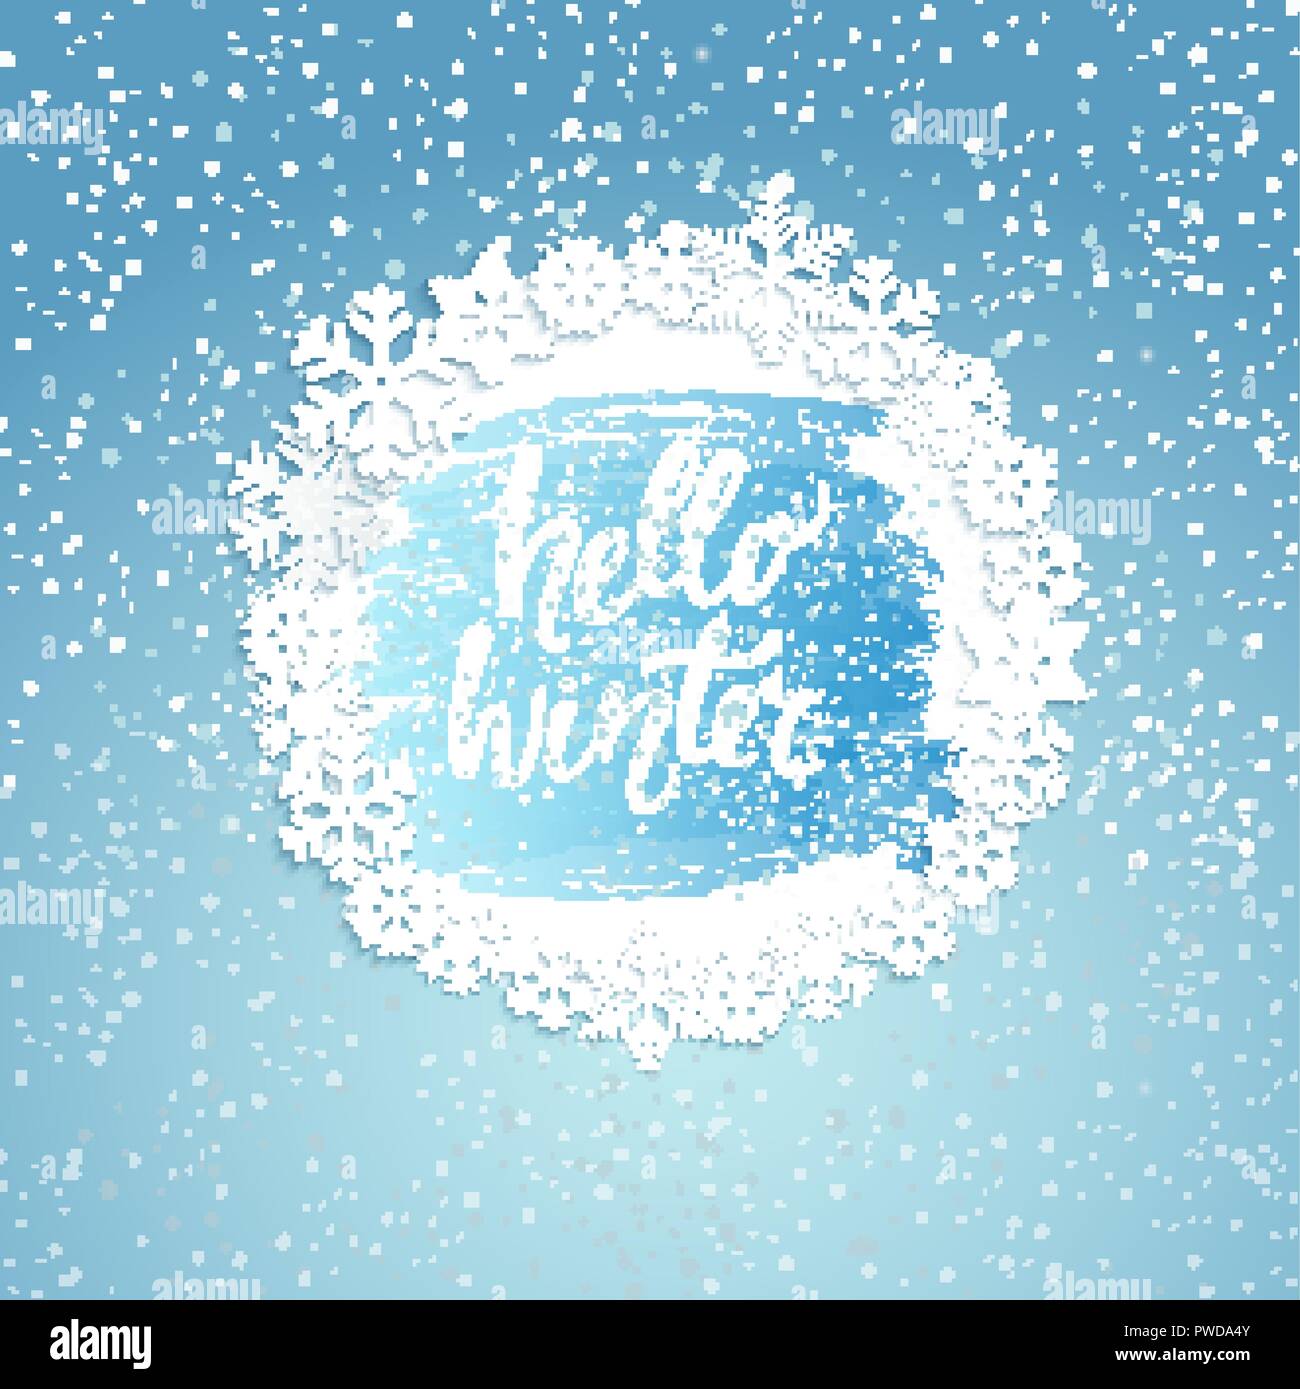 Hallo Winter Grußkarte mit Vintage frame von Schneeflocken. Gruß Winter mit Silvester und Weihnachten, handgezeichneten Schriftzug. Vector Illustration. Stock Vektor